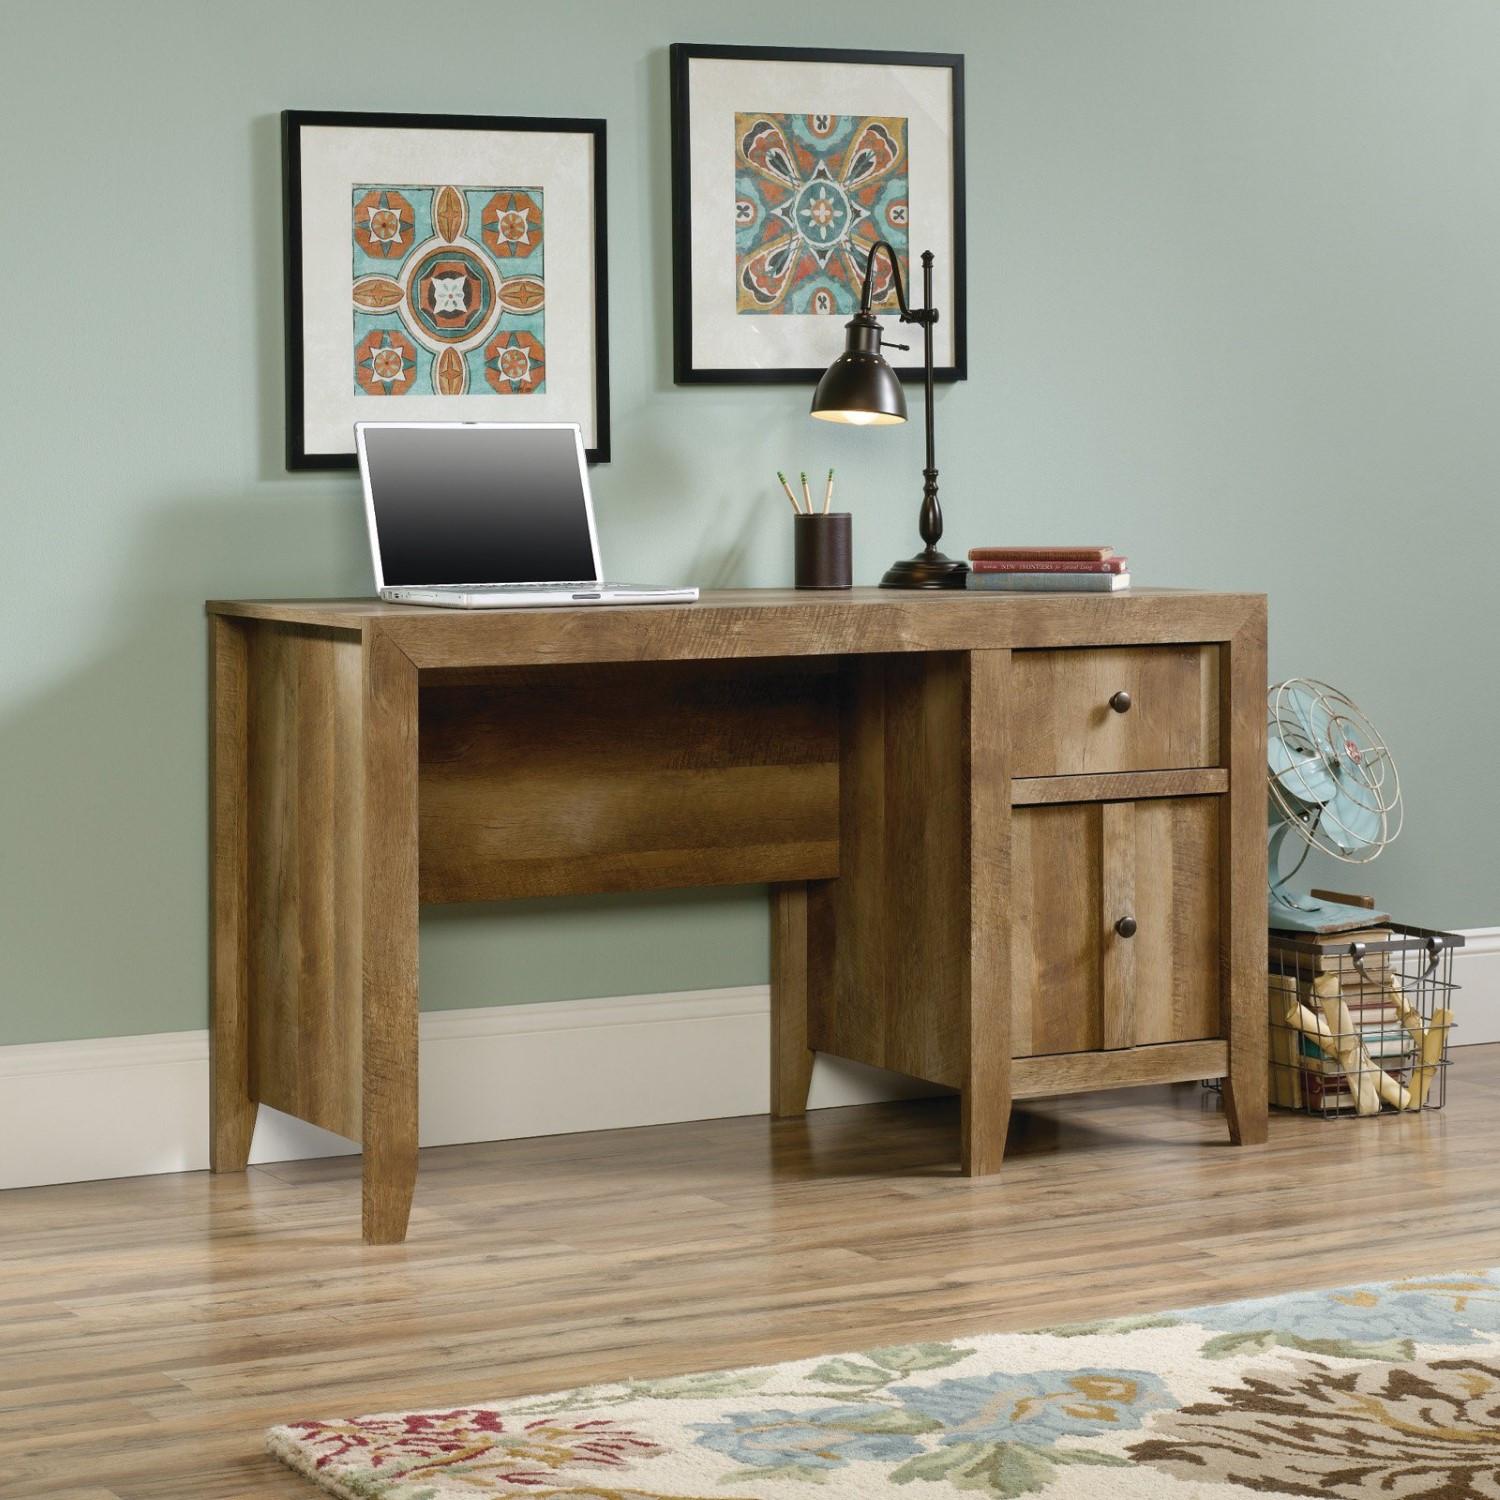 Best ideas about Sauder Office Furniture
. Save or Pin Sauder Dakota Pass Desk Now.